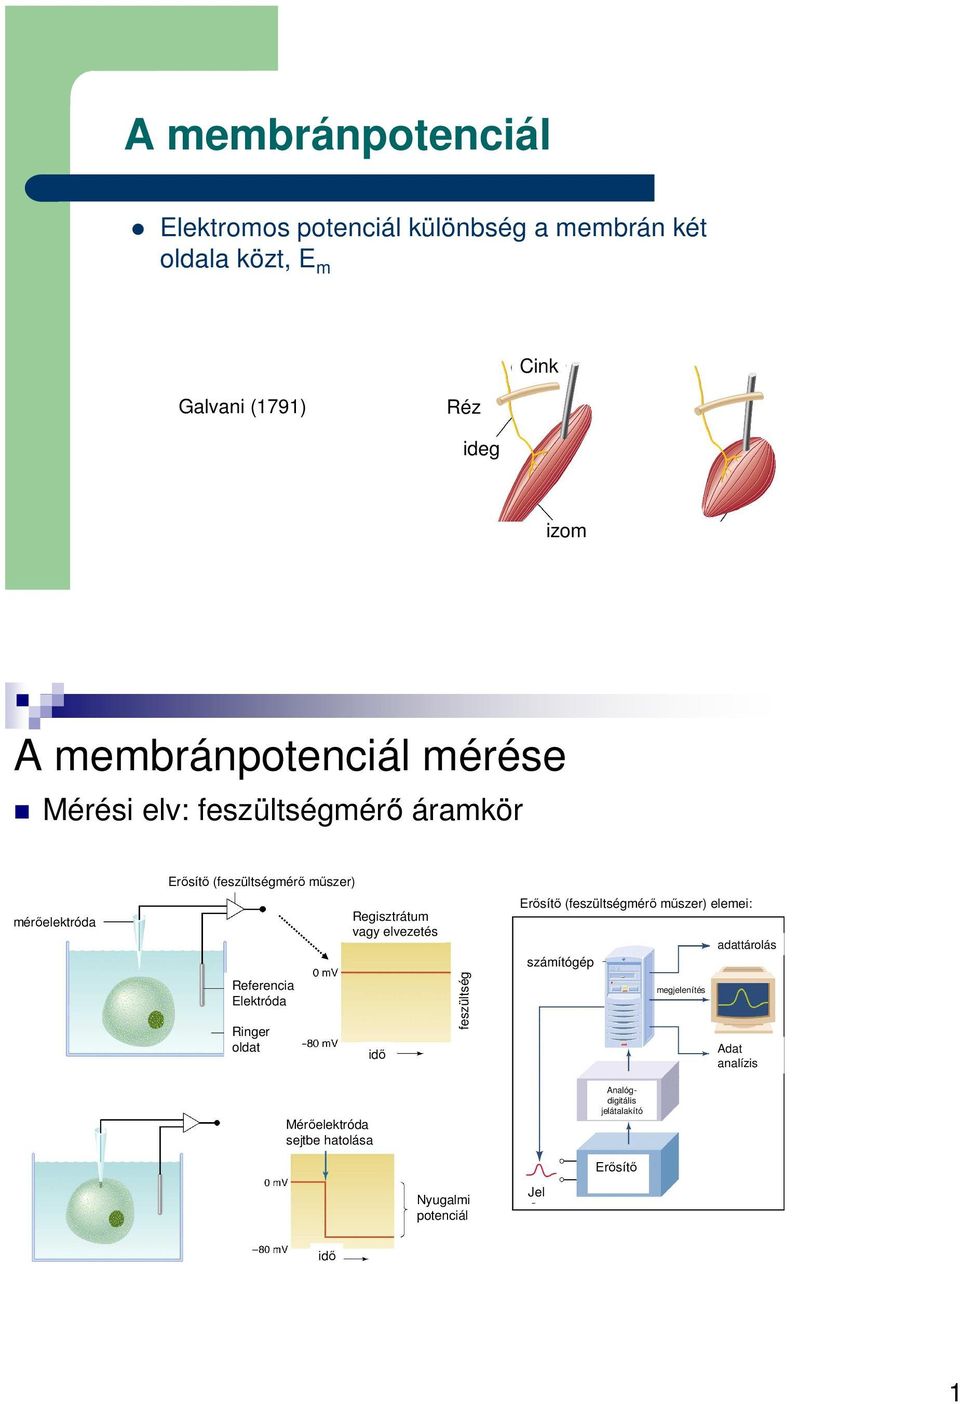 A membránpotenciál. A membránpotenciál mérése - PDF Ingyenes letöltés